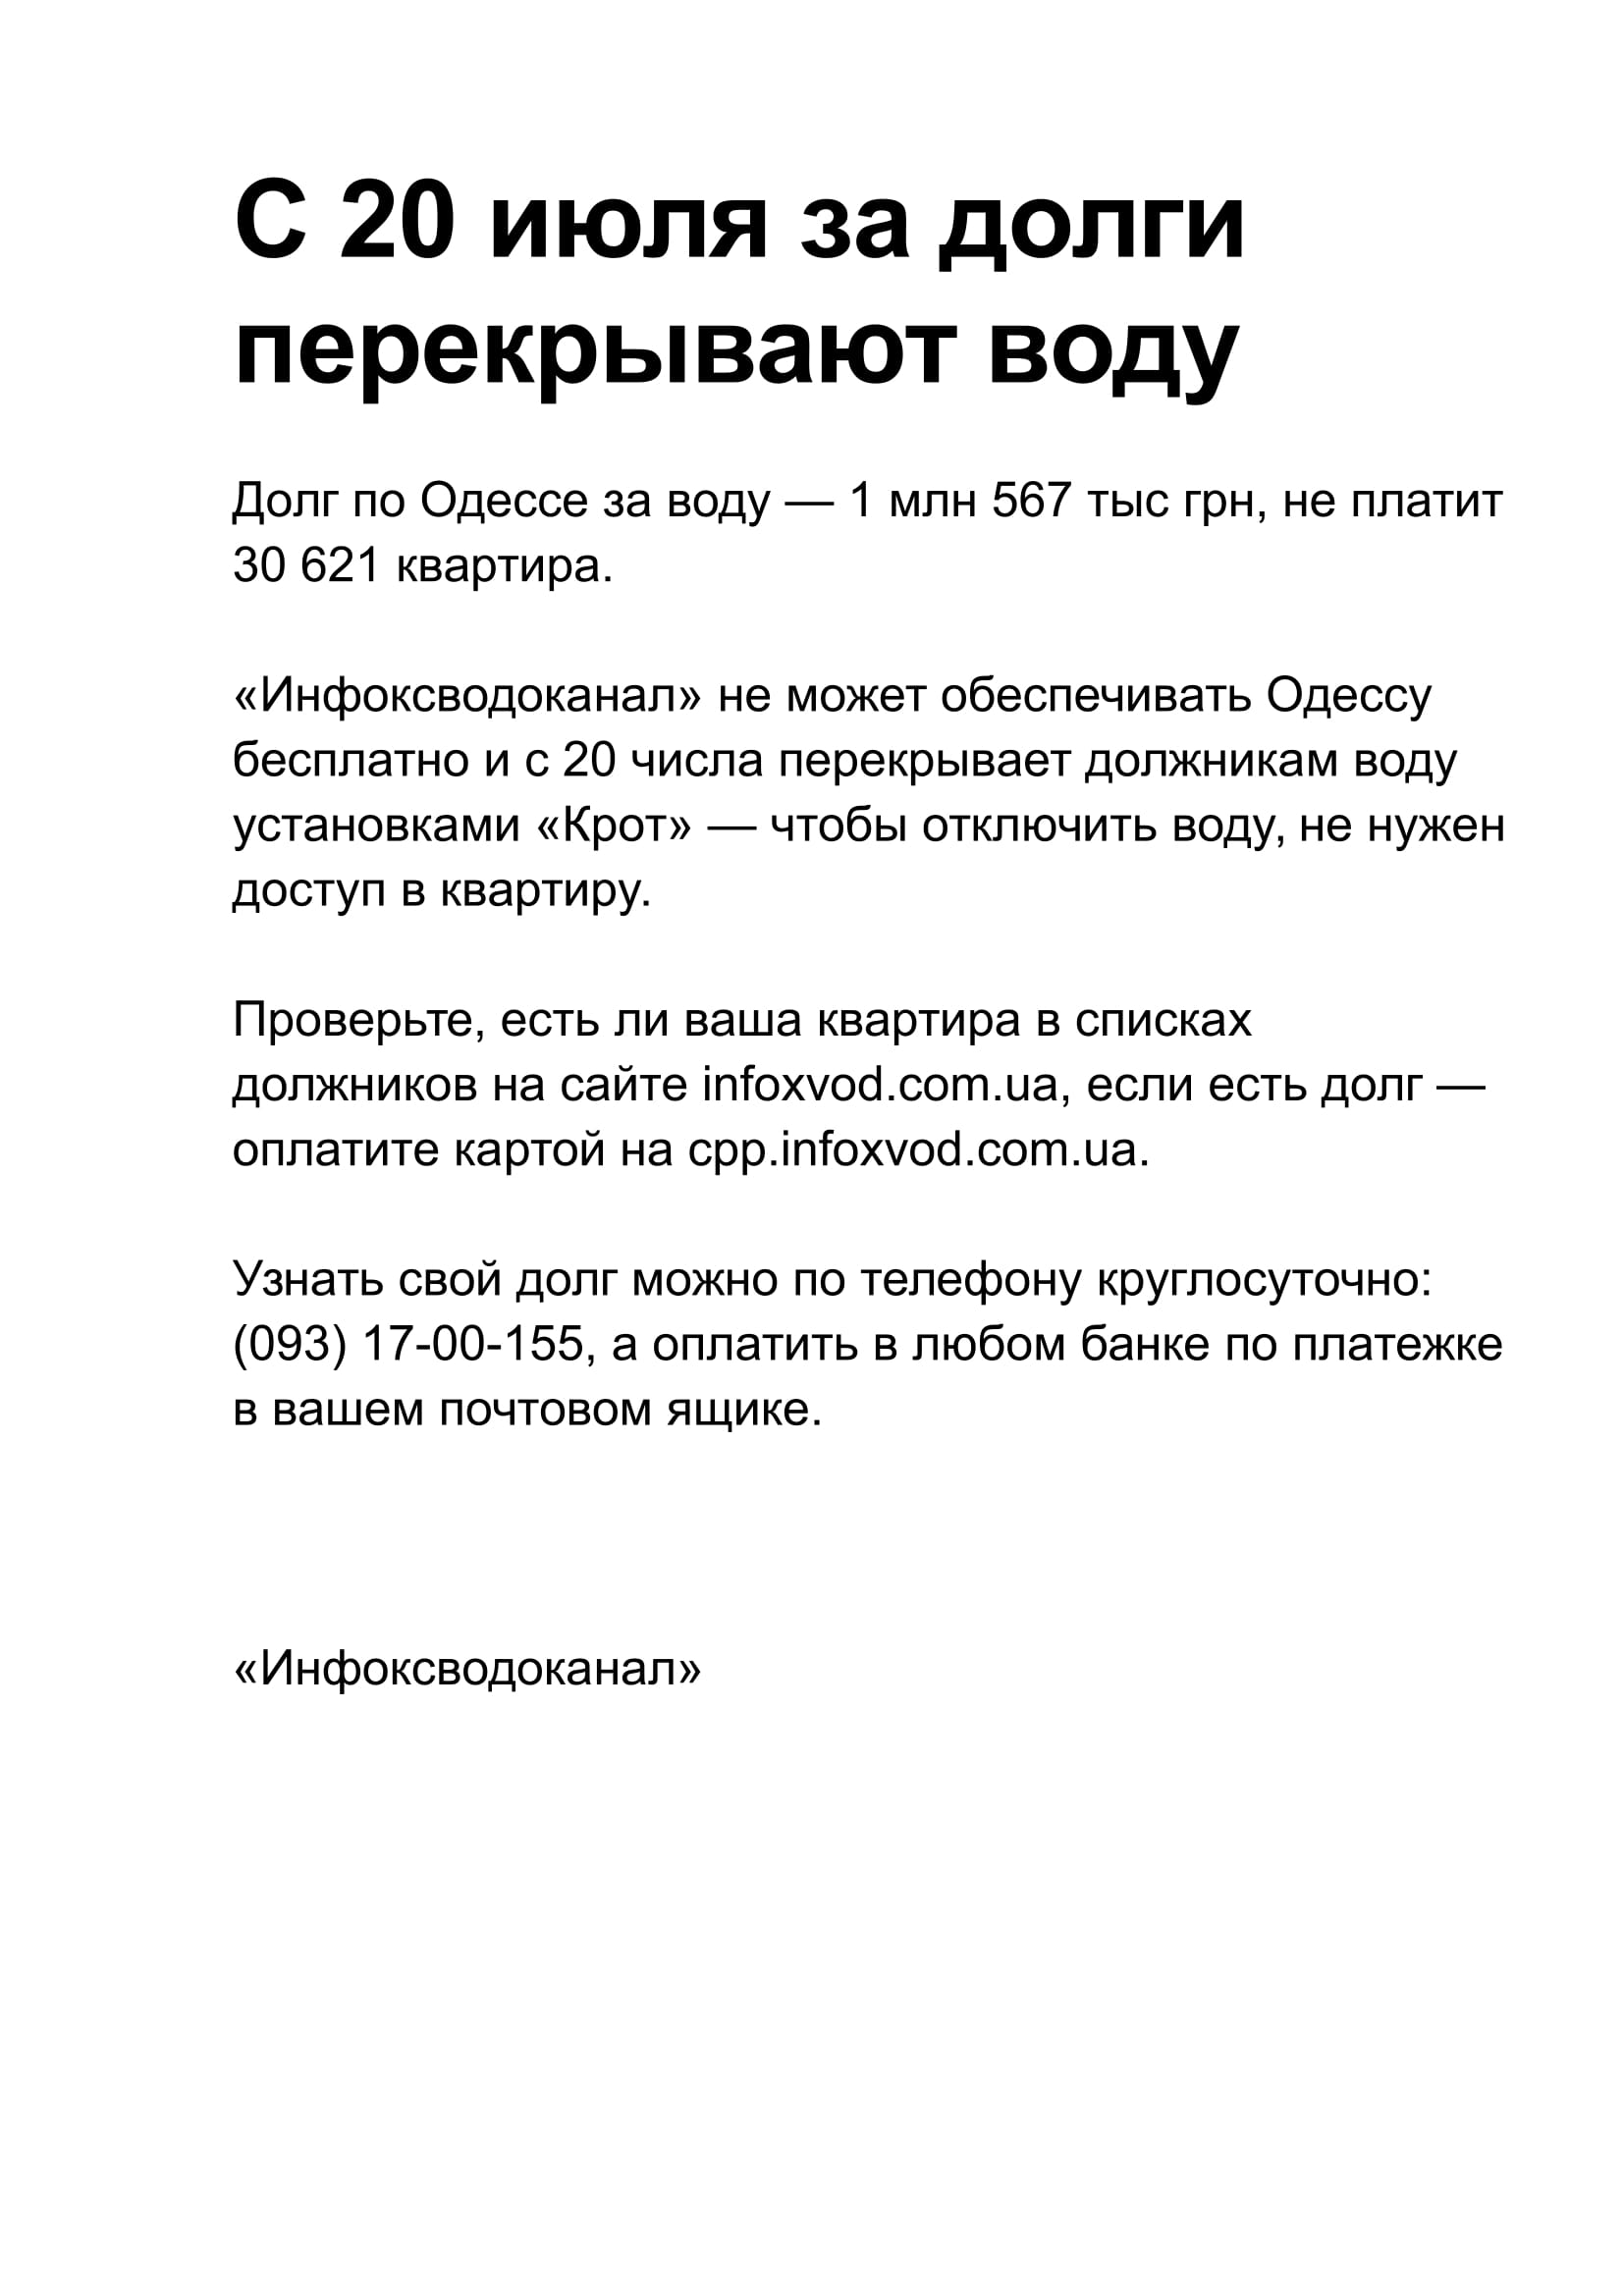 Объявление для Одессы о перекрытии воды